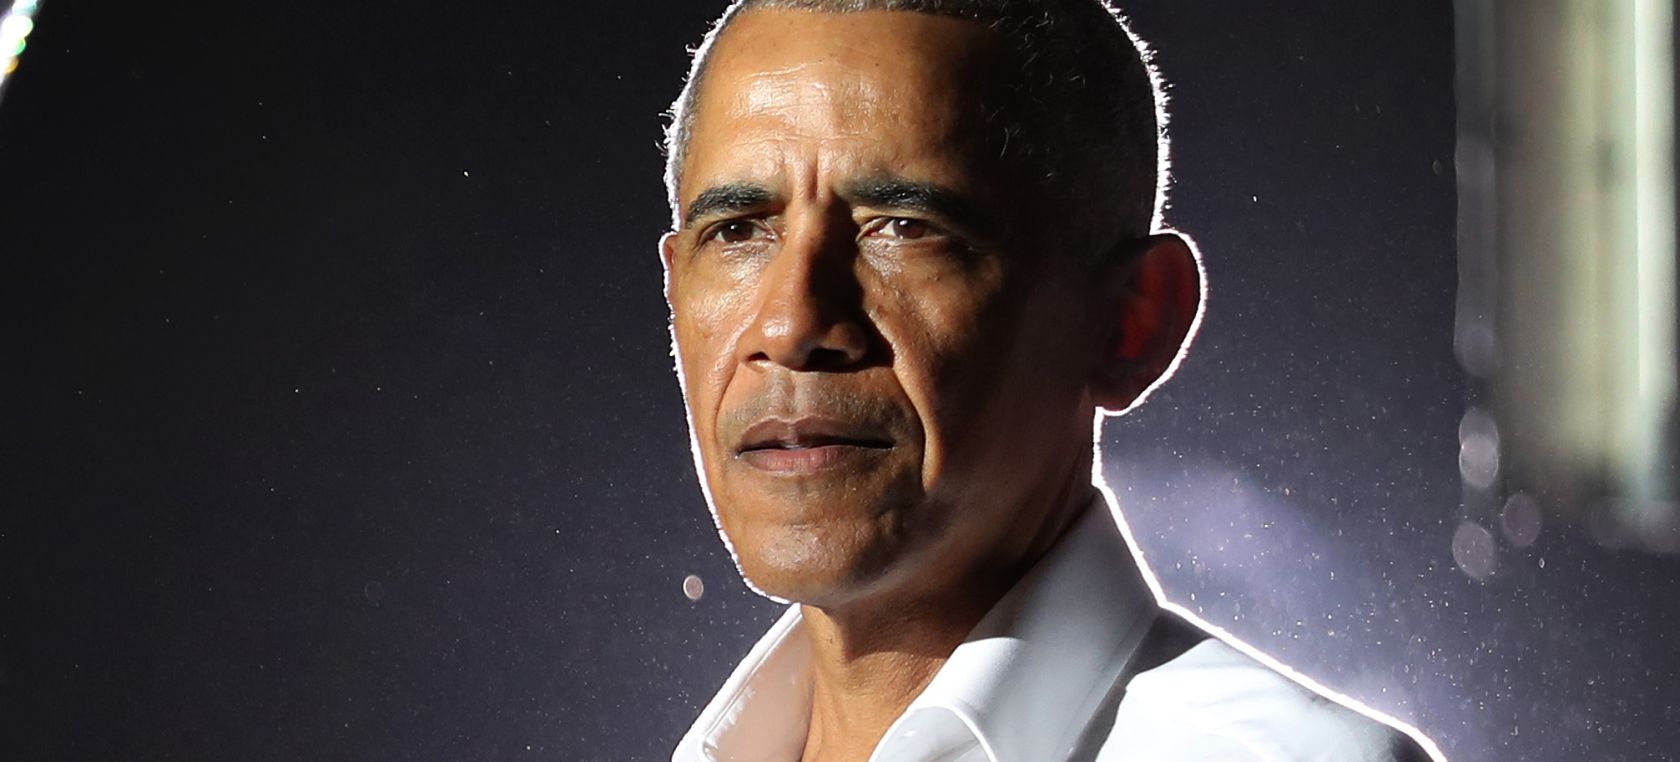 Barack Obama apoya a Joe Biden durante su campaña electoral de 2020